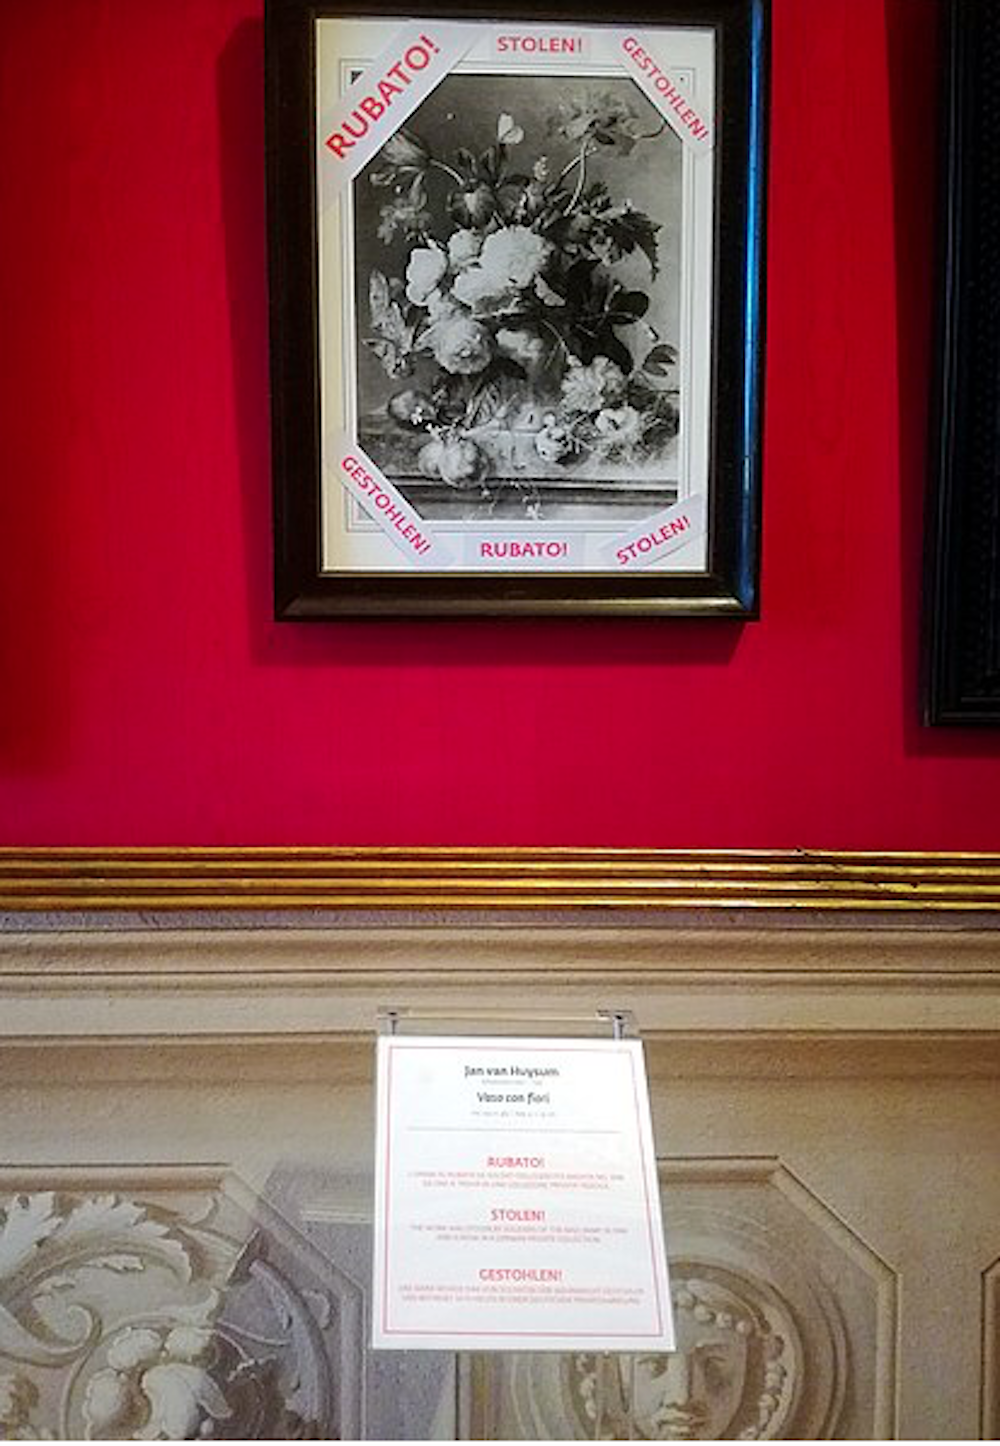 L'Allemand Eike Schmidt, le directeur du Musée des Offices, auquel appartient le Palazzo Pitti, avait mis en lumière ce tableau en en affichant en janvier une copie en noir et blanc dans la galerie avec la mention "volé" dessus.